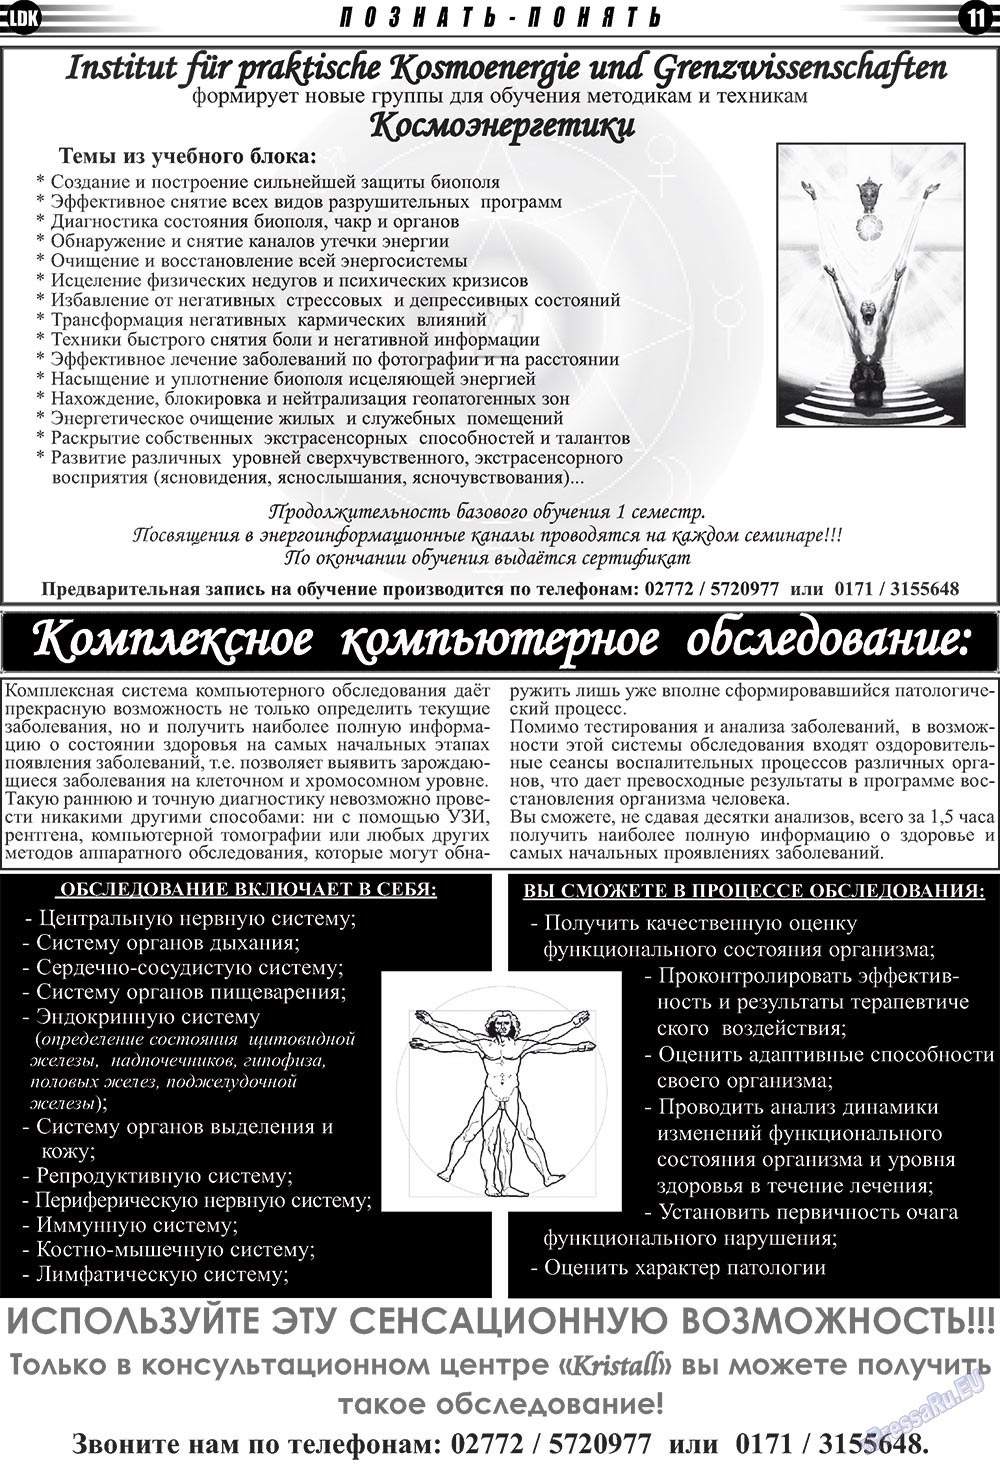 LDK по-русски (газета). 2010 год, номер 4, стр. 11